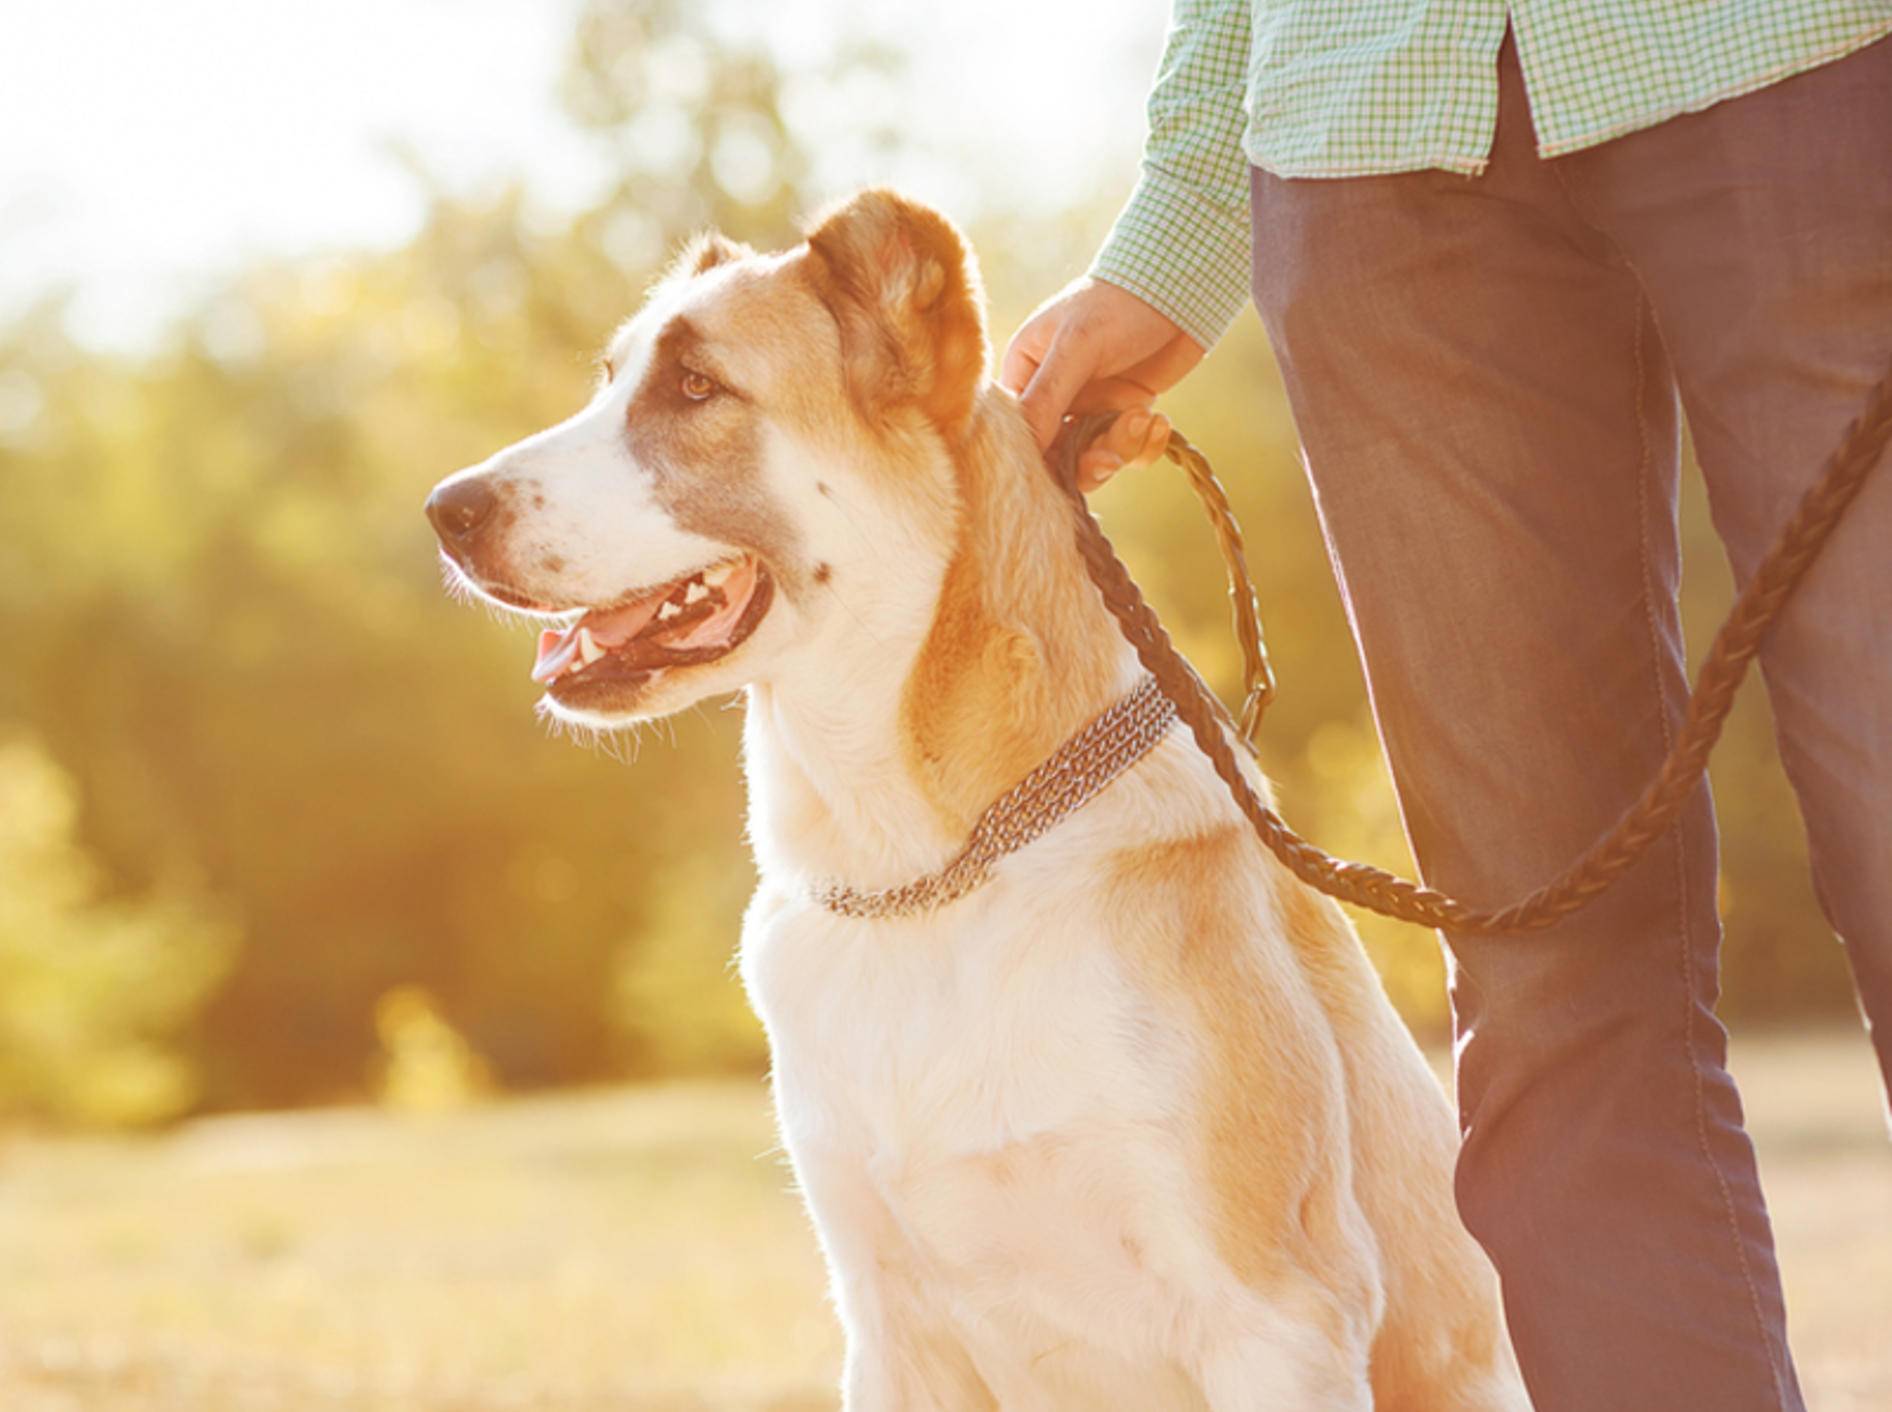 Beim Hundespaziergang sollten Sie ein paar Grundregeln beachten - Bild: Shutterstock / Rock and Wasp